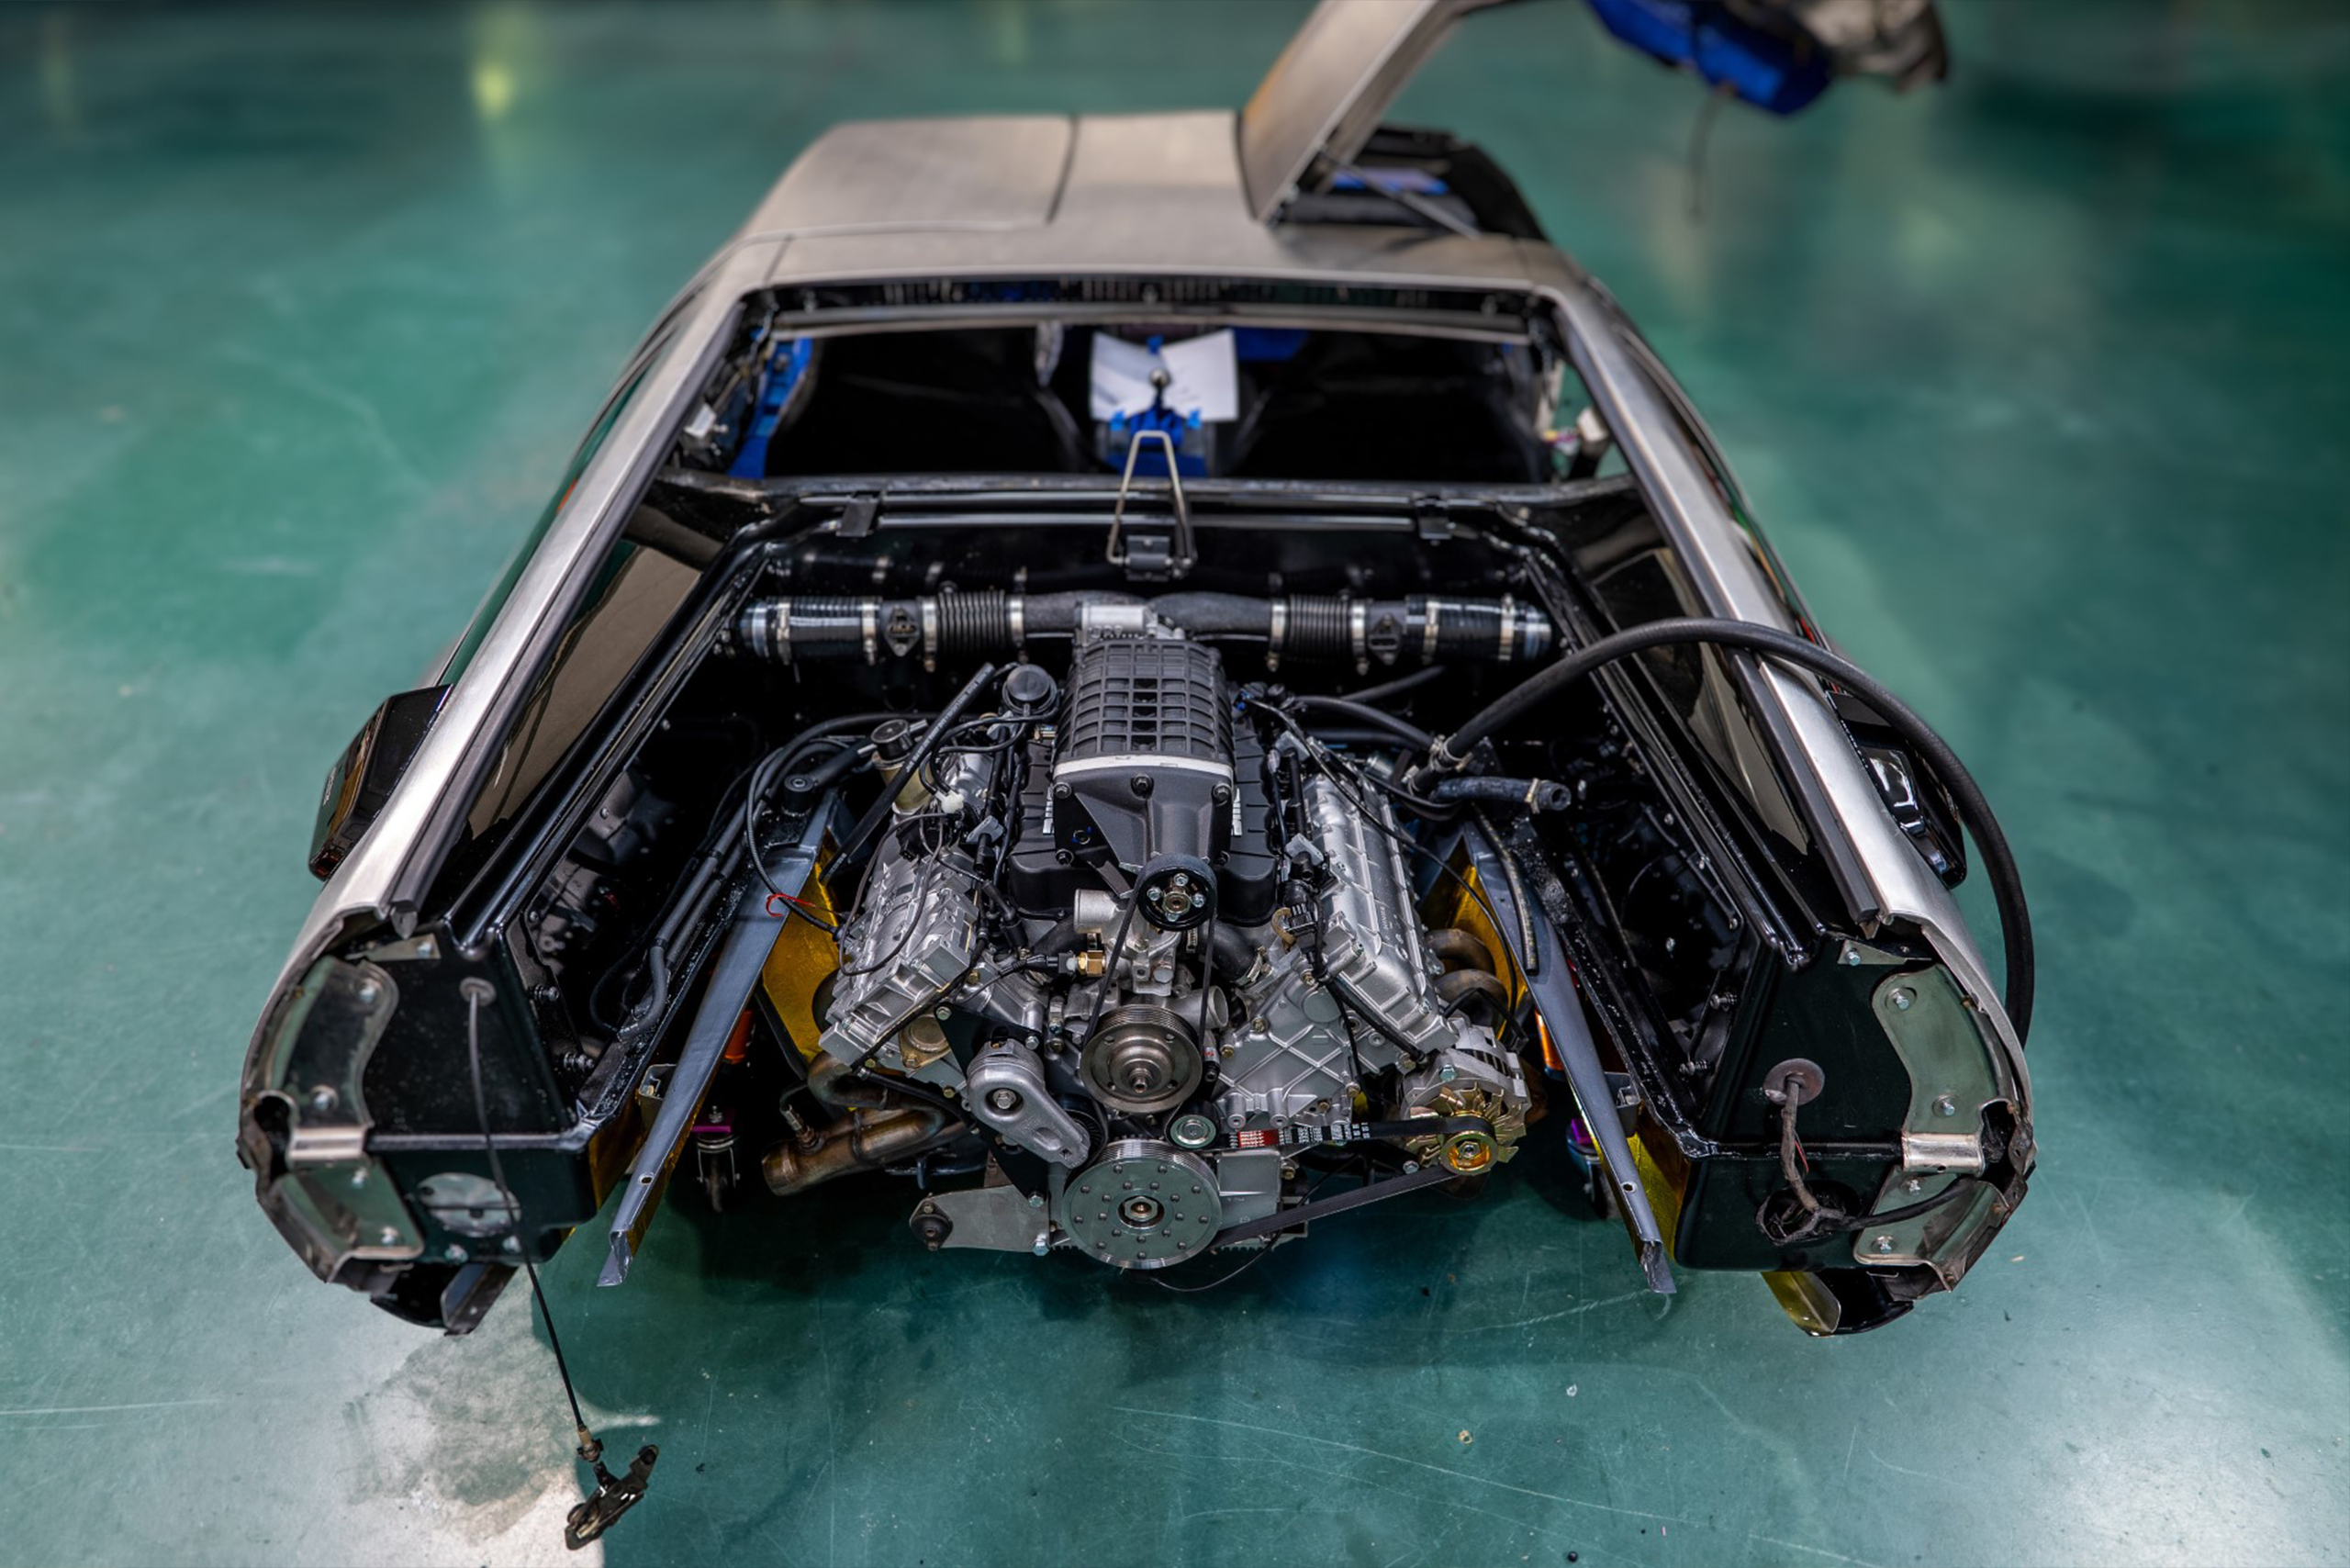 Delorean GTO Engine Bay 2